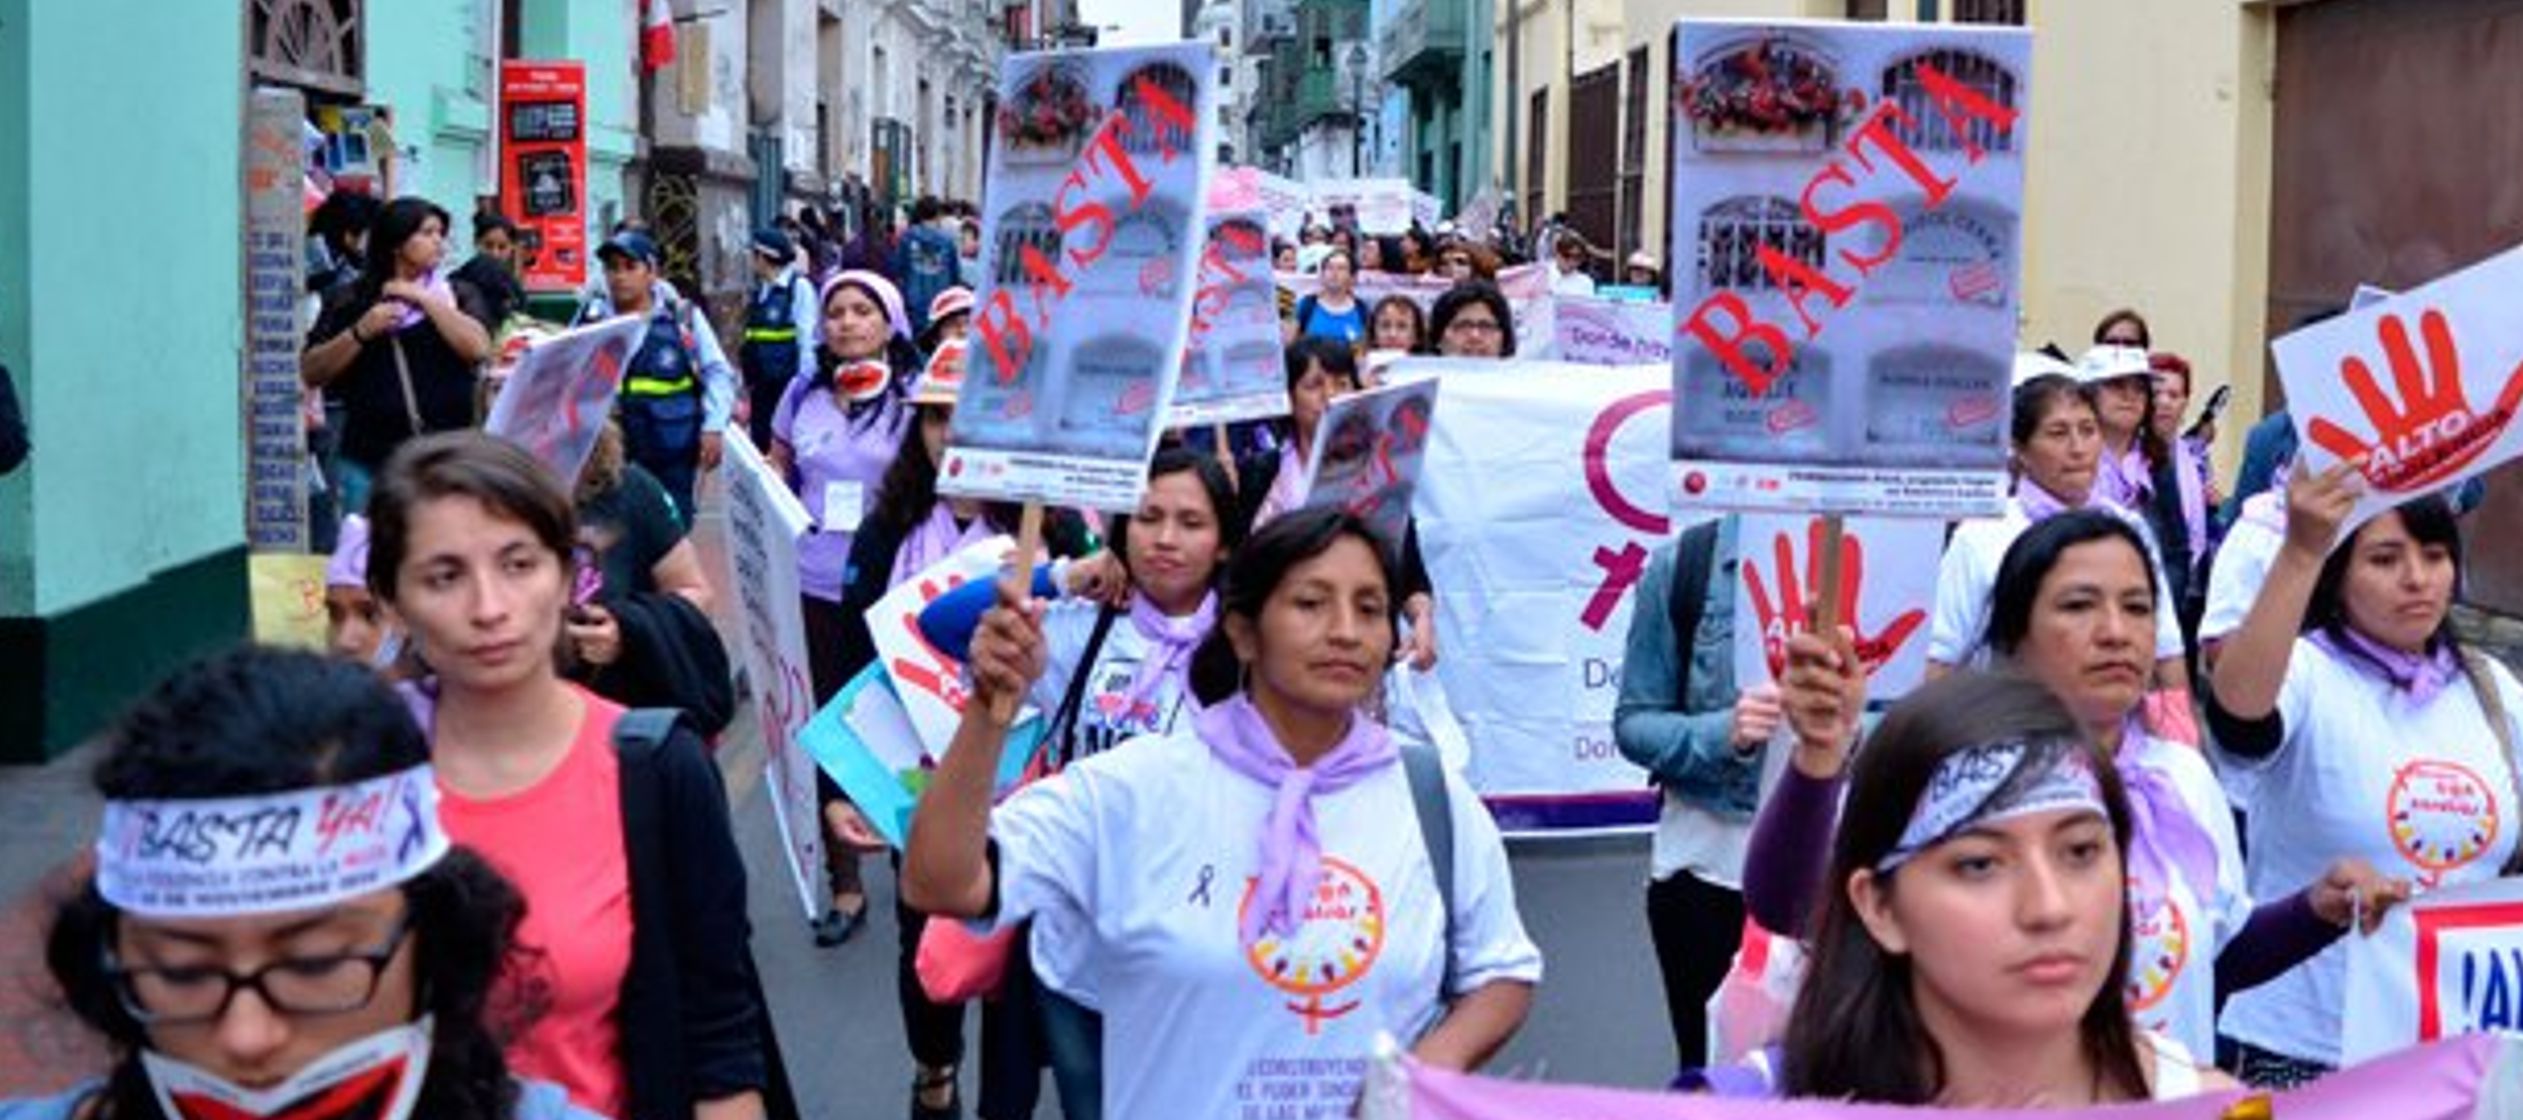 La marcha fue acompañada por decenas de mujeres policía, que caminaban junto a las...